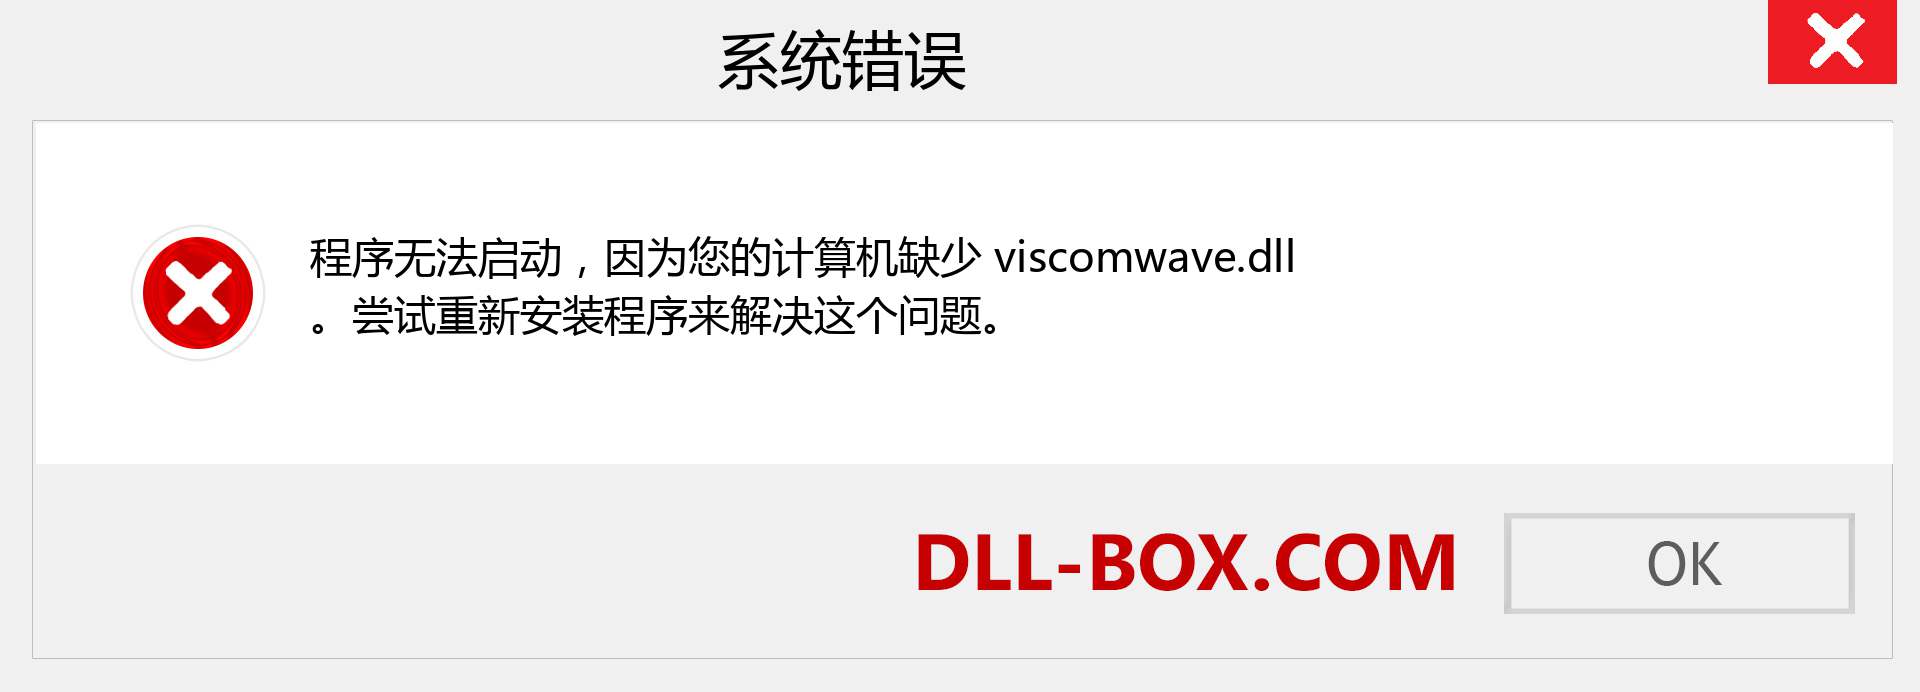 viscomwave.dll 文件丢失？。 适用于 Windows 7、8、10 的下载 - 修复 Windows、照片、图像上的 viscomwave dll 丢失错误